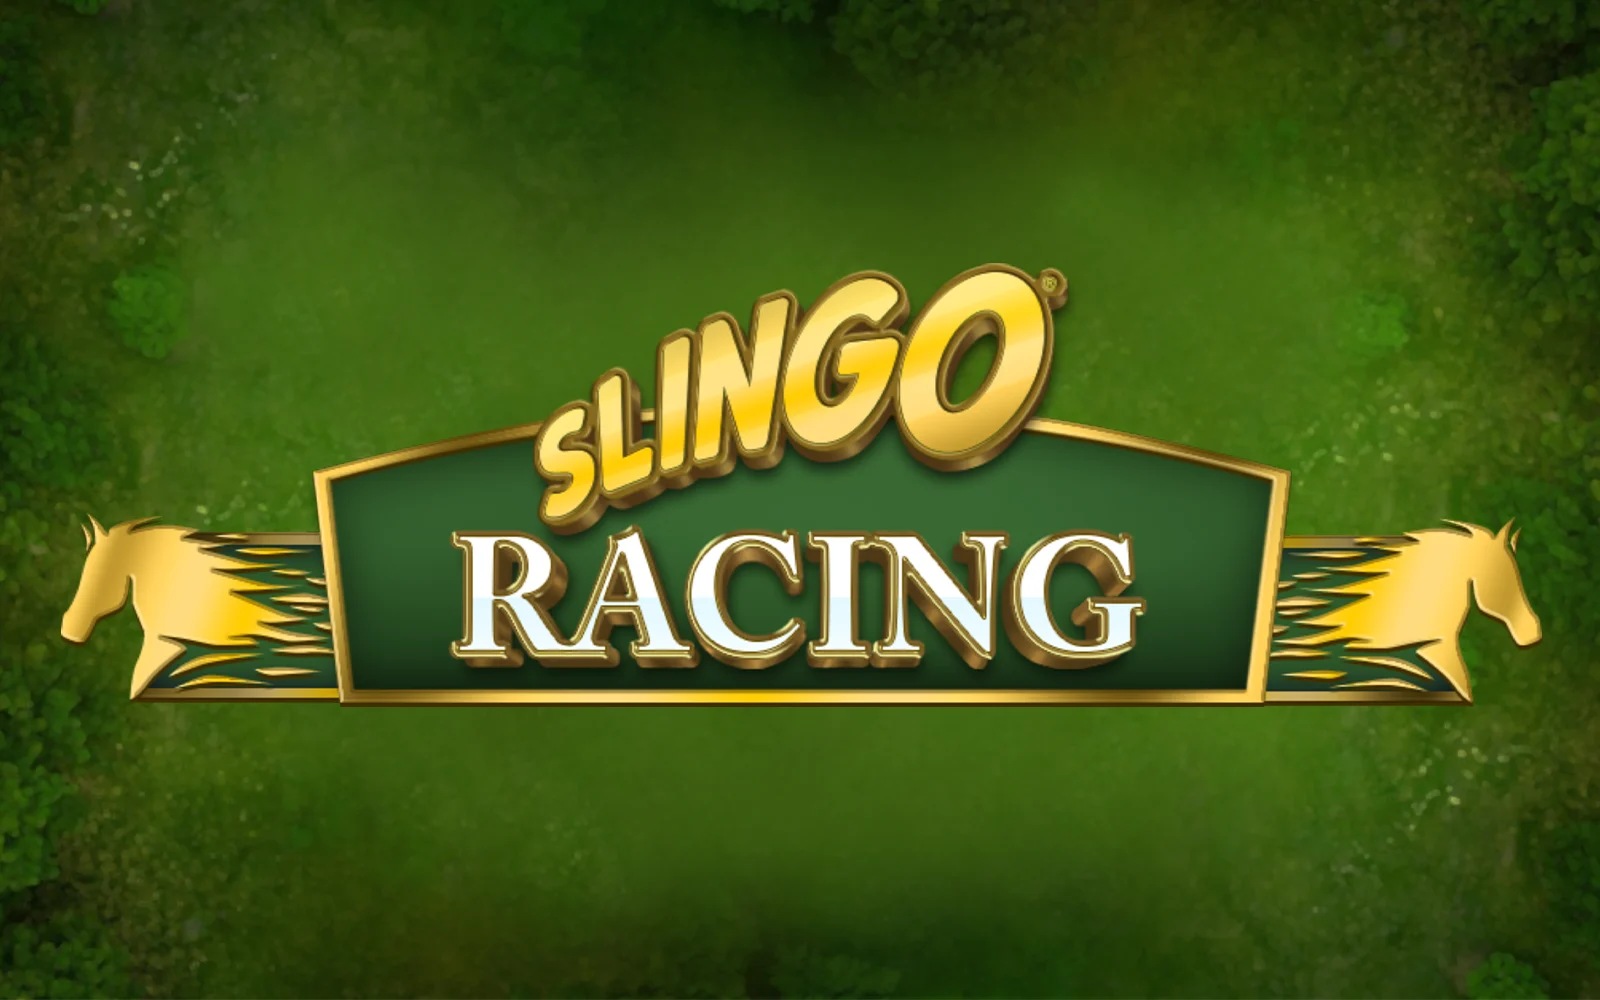 Play Slingo Racing on Starcasino.be online casino